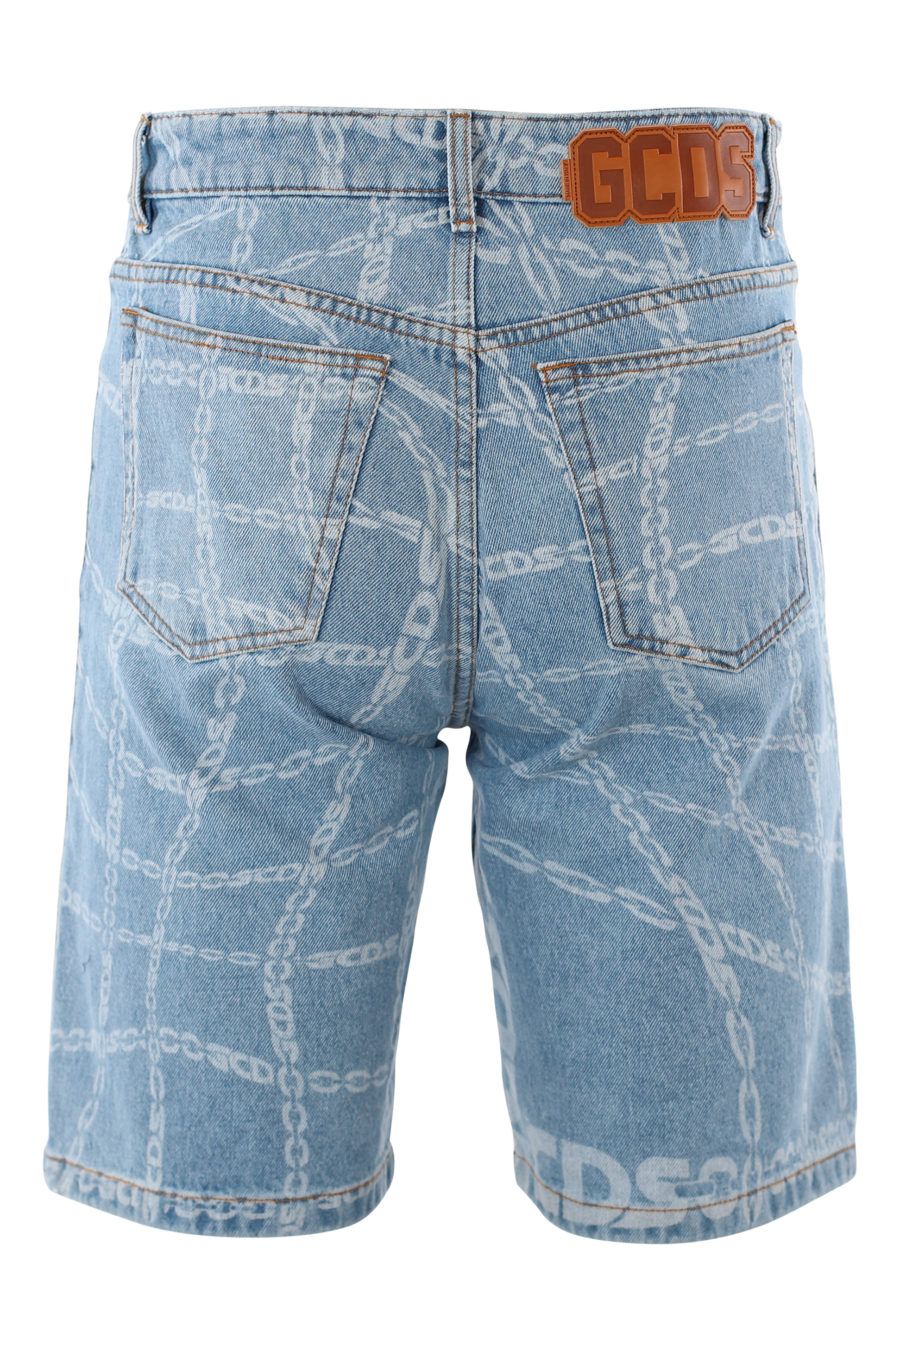 Pantalón corto azul con logo en goma y estampado blanco - IMG 2014